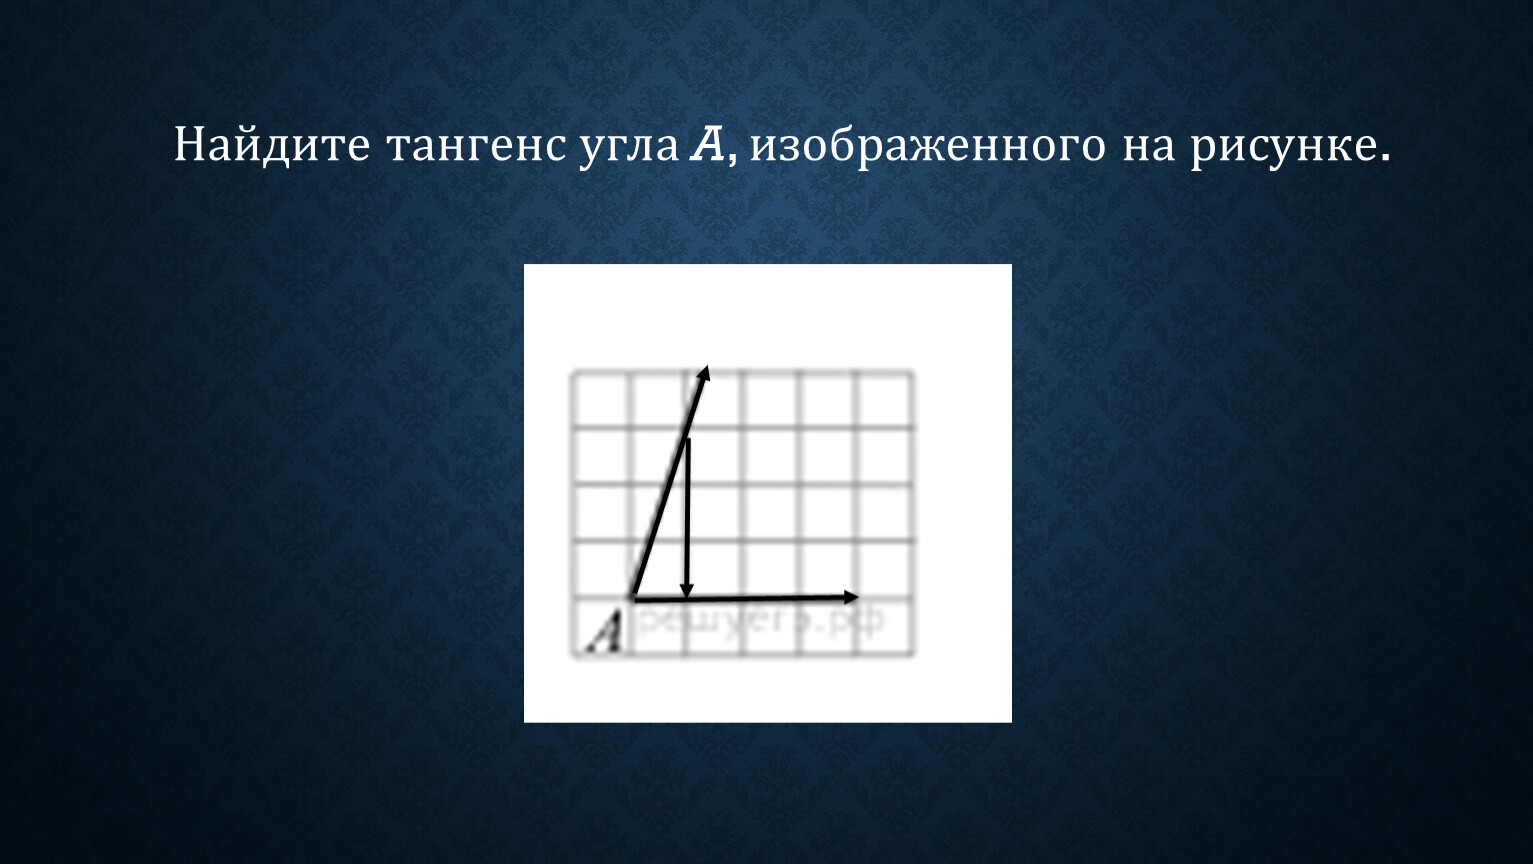 8 найди тангенс угла изображенного на рисунке. На квадратной сетке изображён угол  a. Найдите   тангенс a..